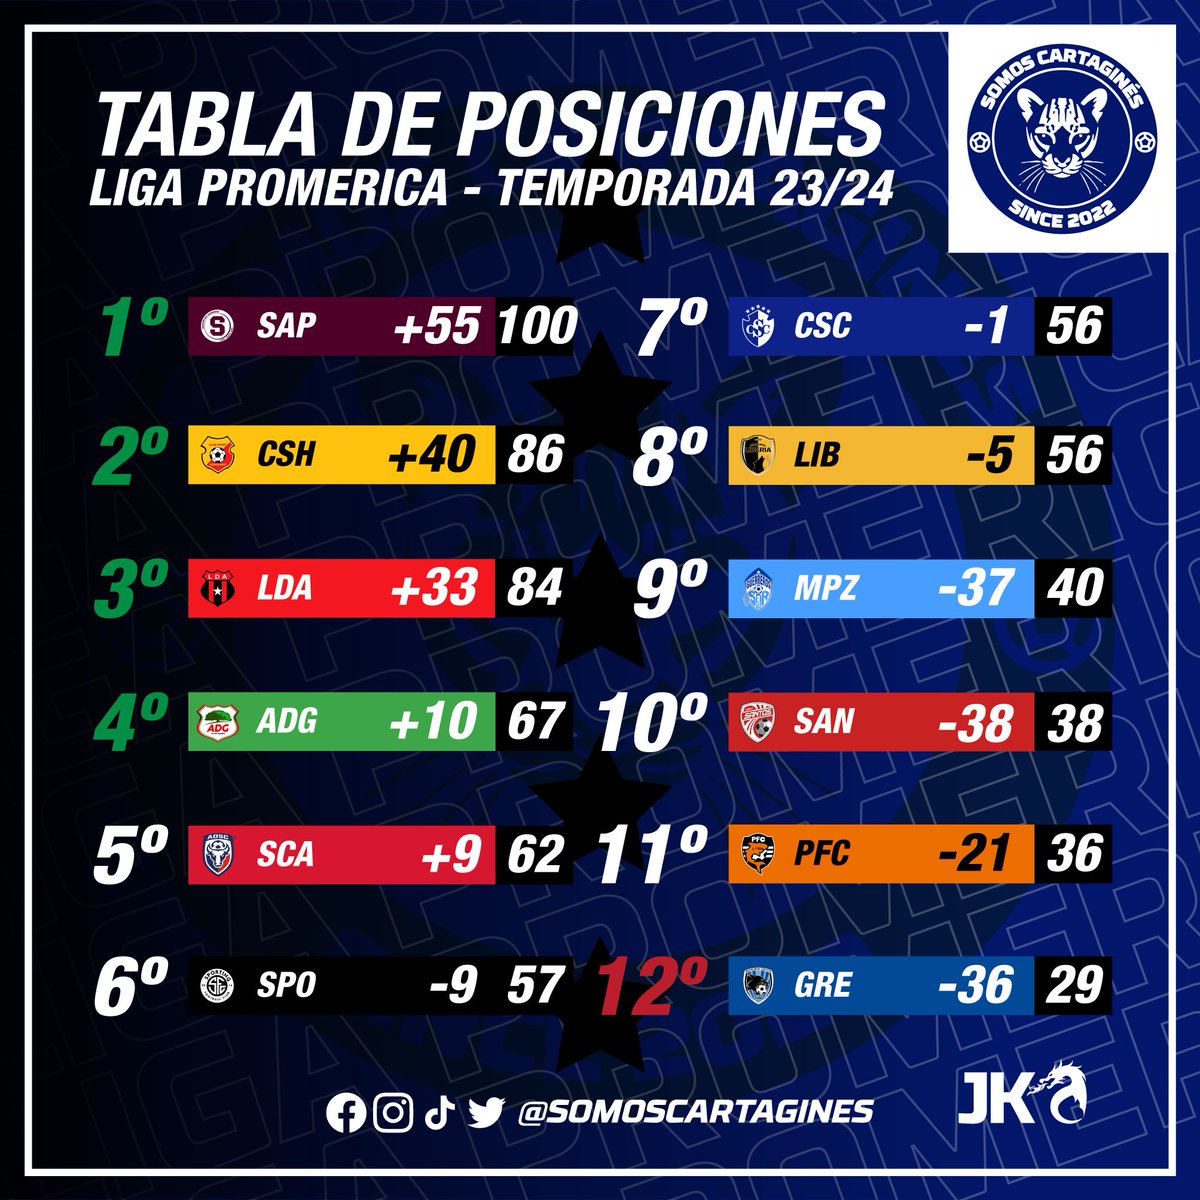 #TablasdePosiciones
Así quedan las tablas de posiciones del torneo de Clausura y la acumulada de la temporada 23/24 de la Liga Promerica a la falta de disputarse la última jornada de la fase regular.
#1CSC #VamosCartagines